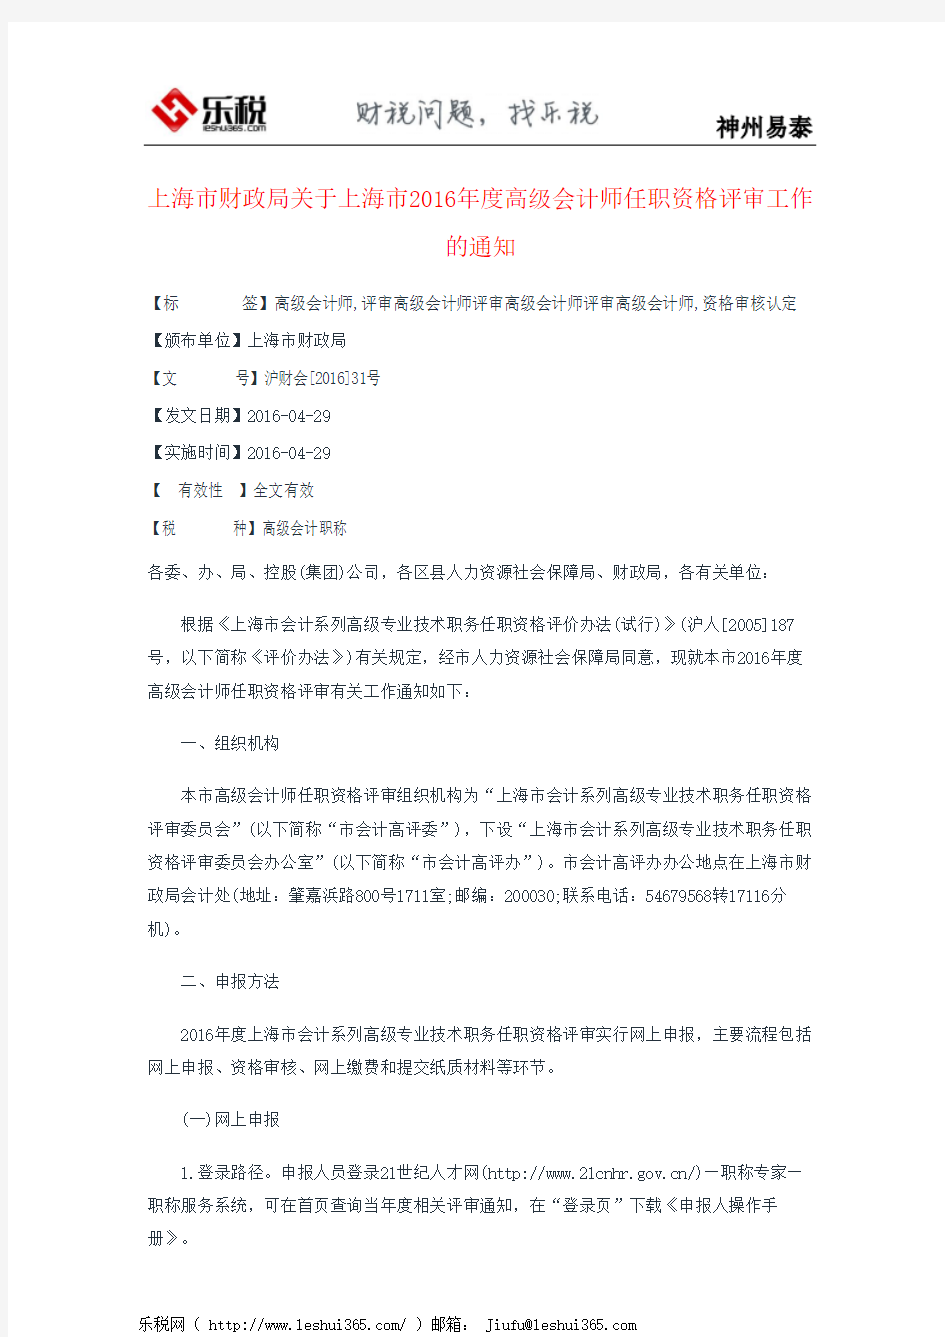 上海市财政局关于上海市2016年度高级会计师任职资格评审工作的通知